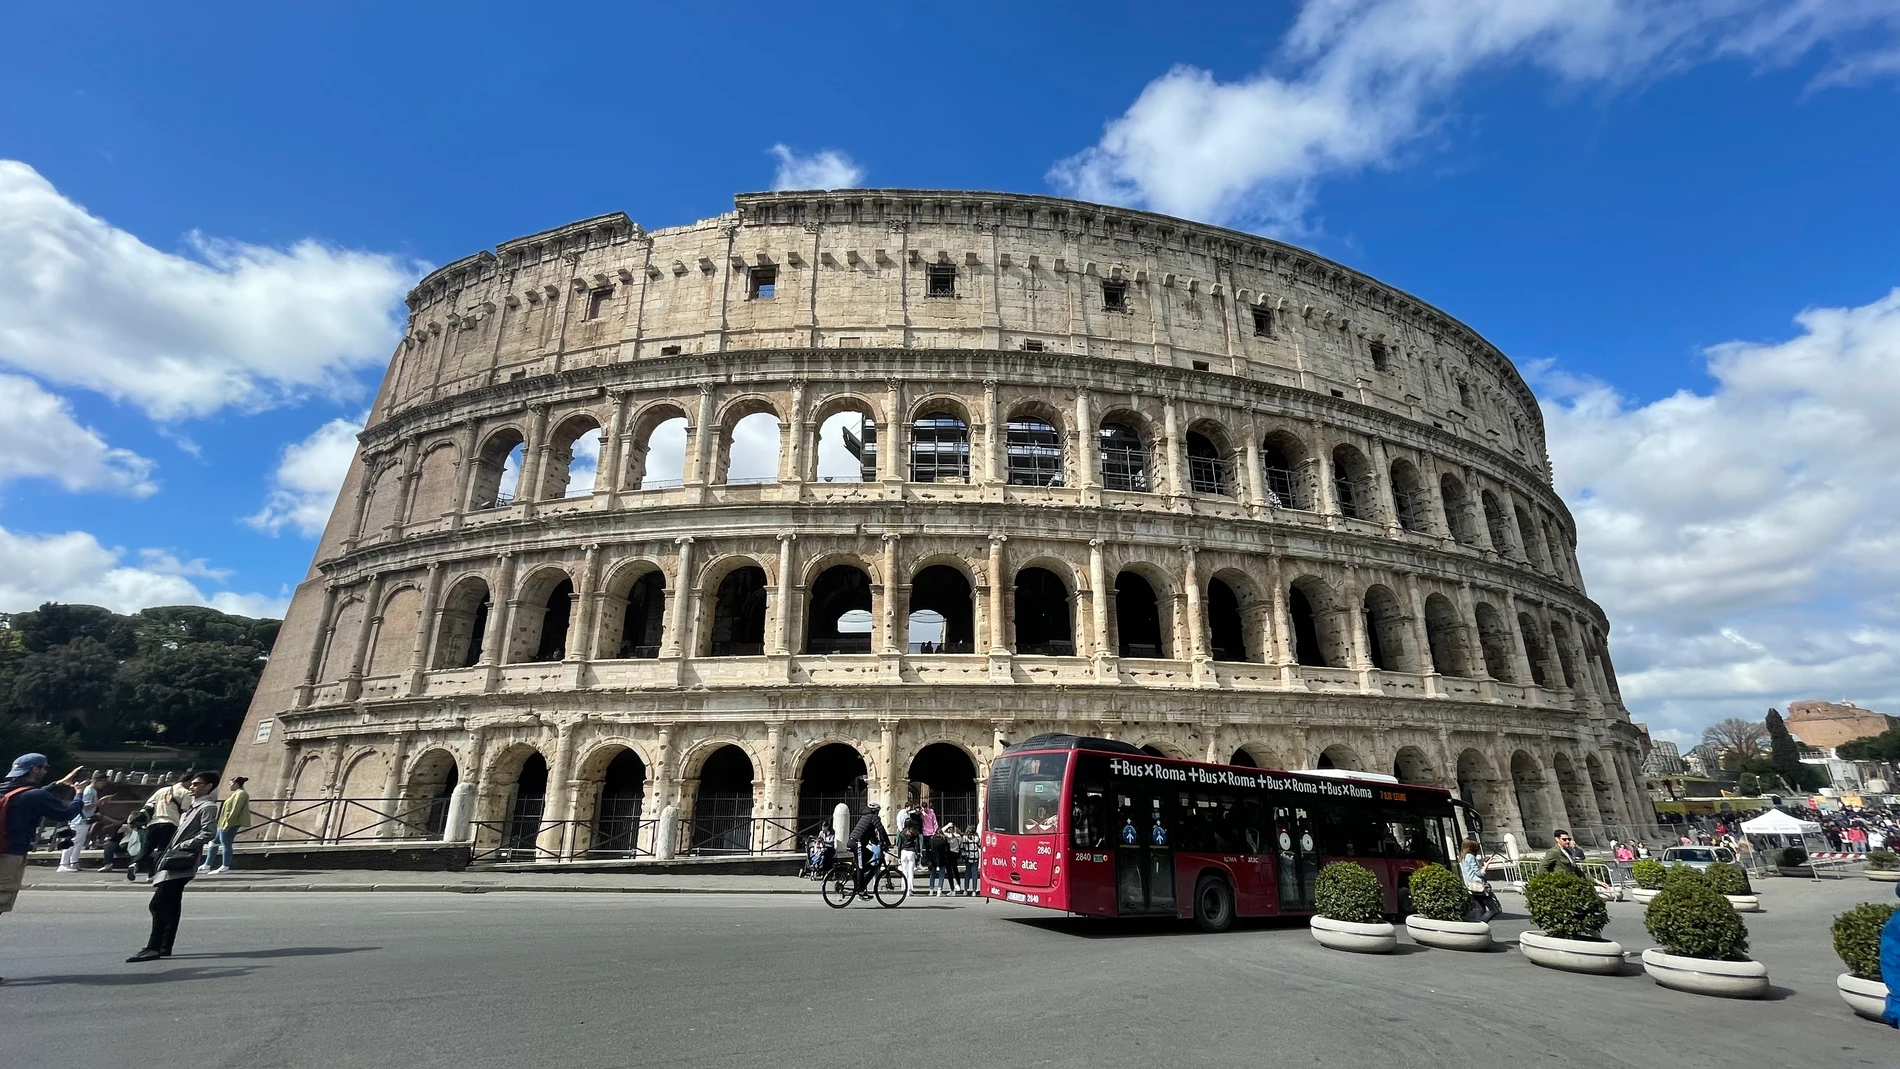 Rincones de Roma, lugares con encanto - Guía En Roma